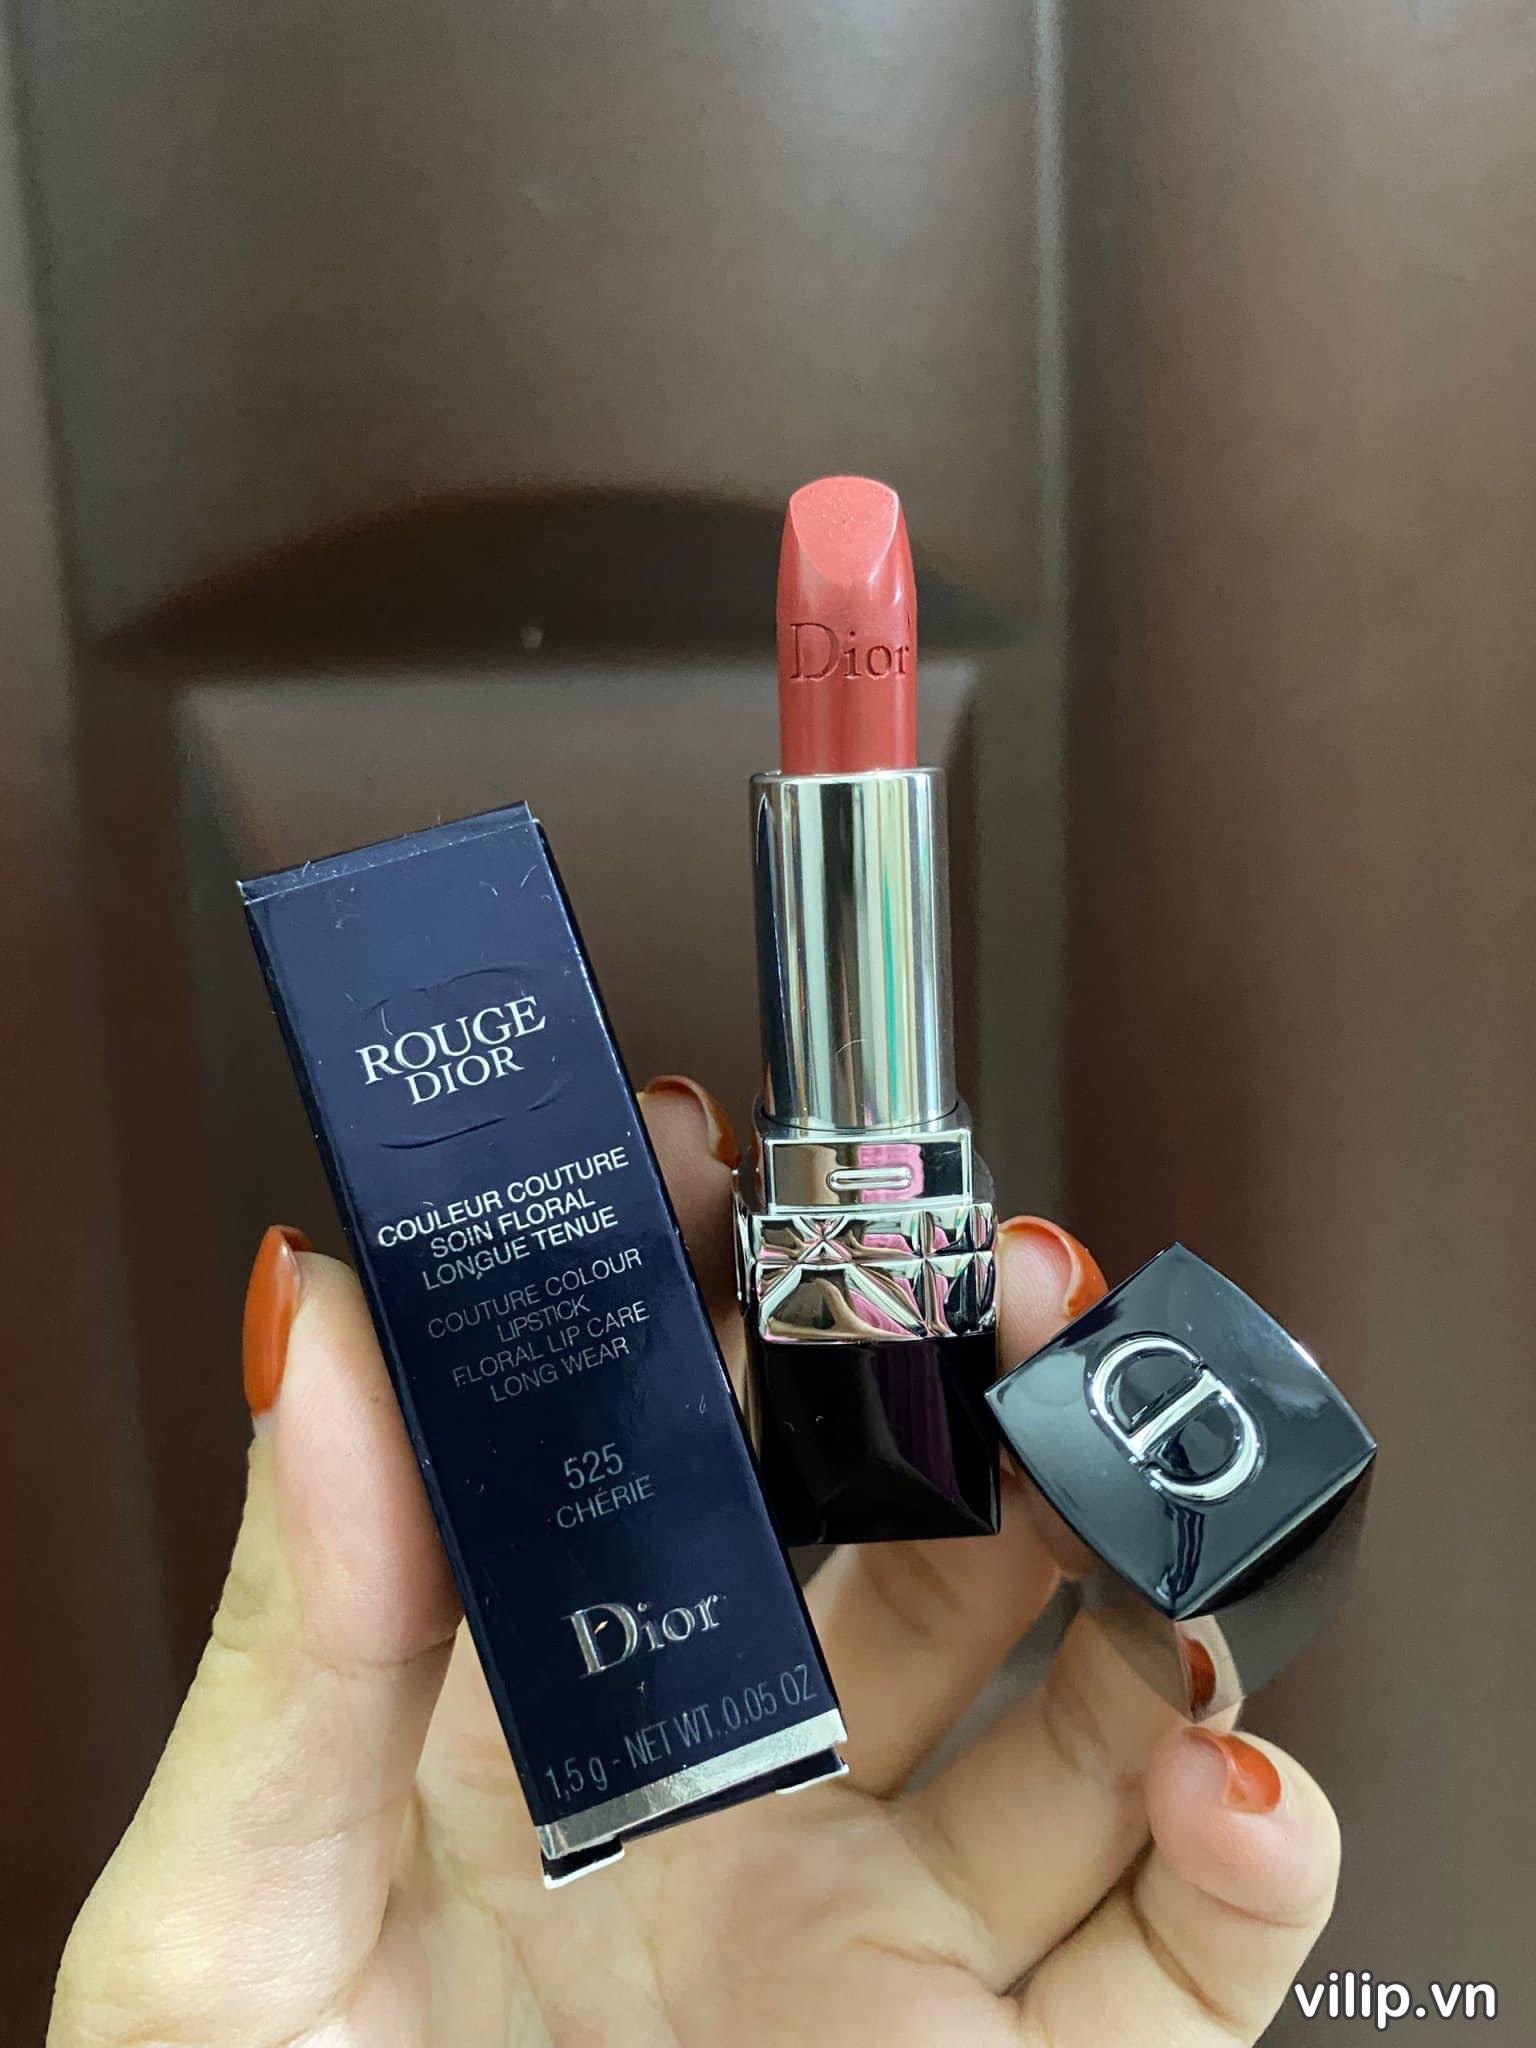 Son Dior Rouge Forever Transfer Proof Lipstick 525 Forever Chérie New   Màu Hồng Cam Đất  Vilip Shop  Mỹ phẩm chính hãng